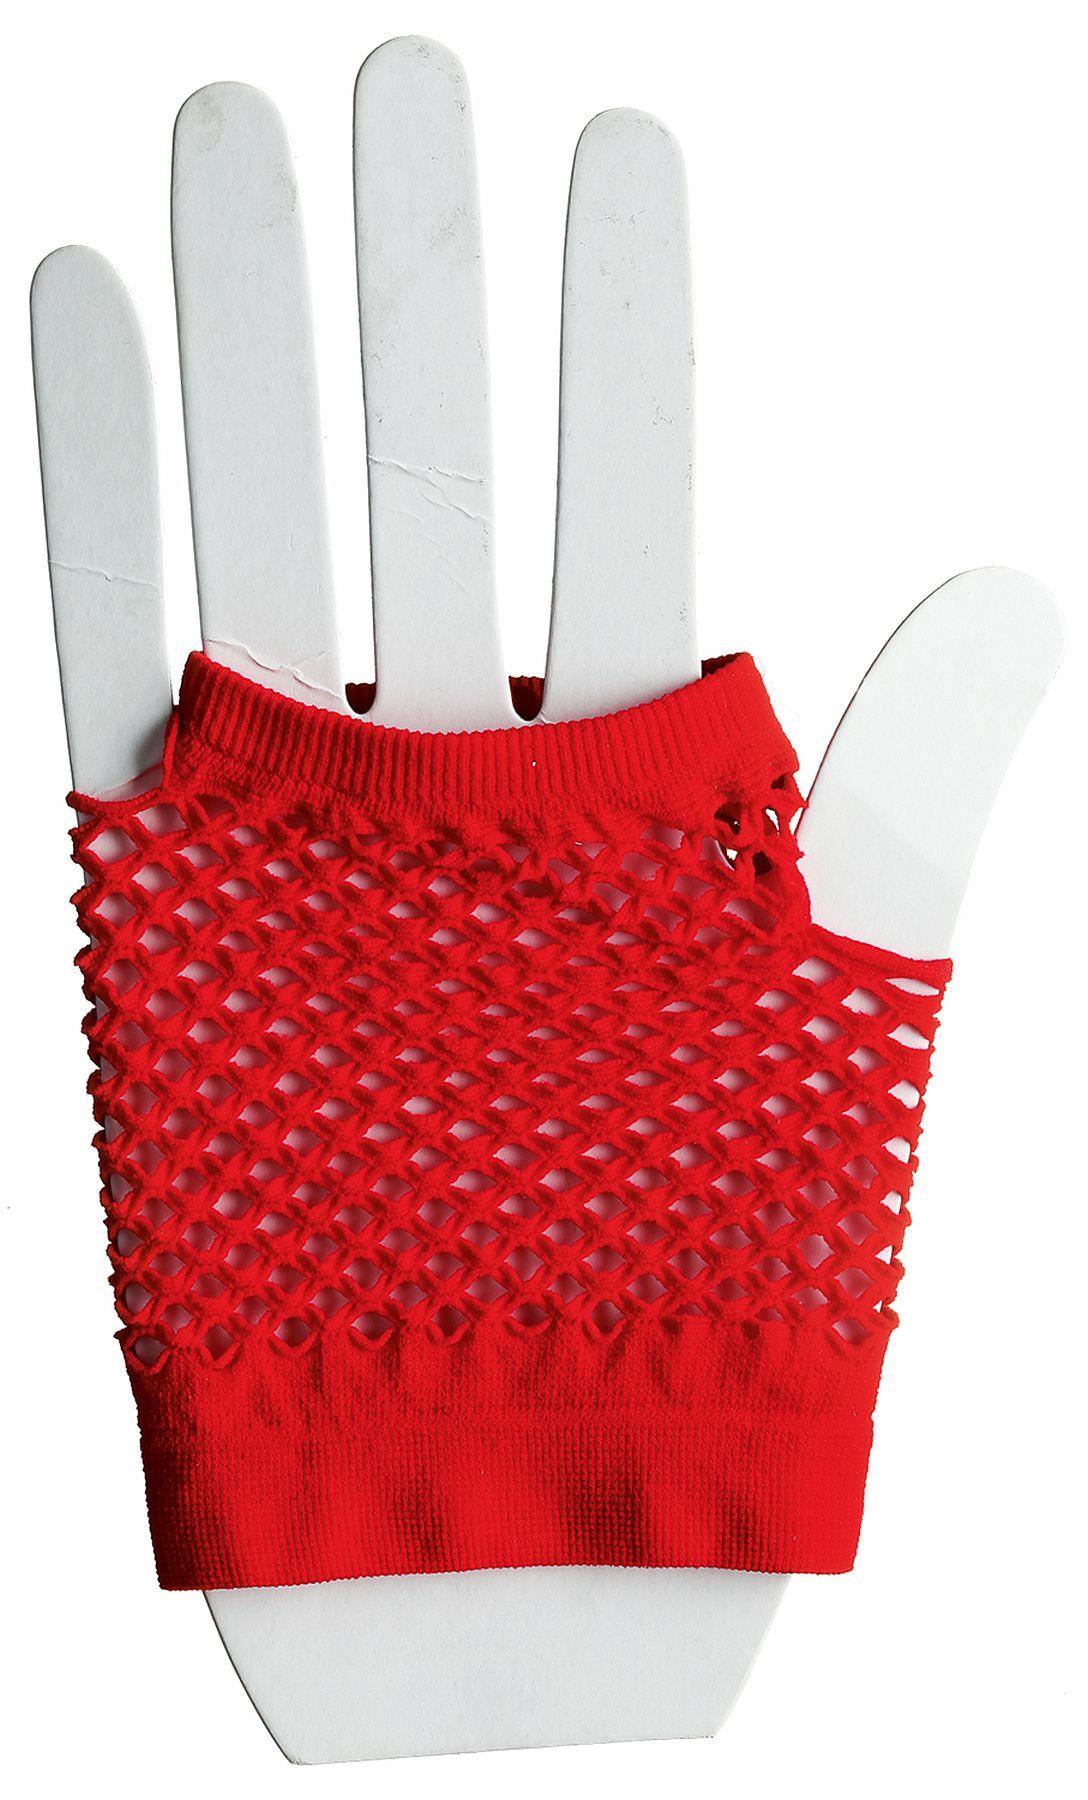 Mesh short gloves fingerless, red